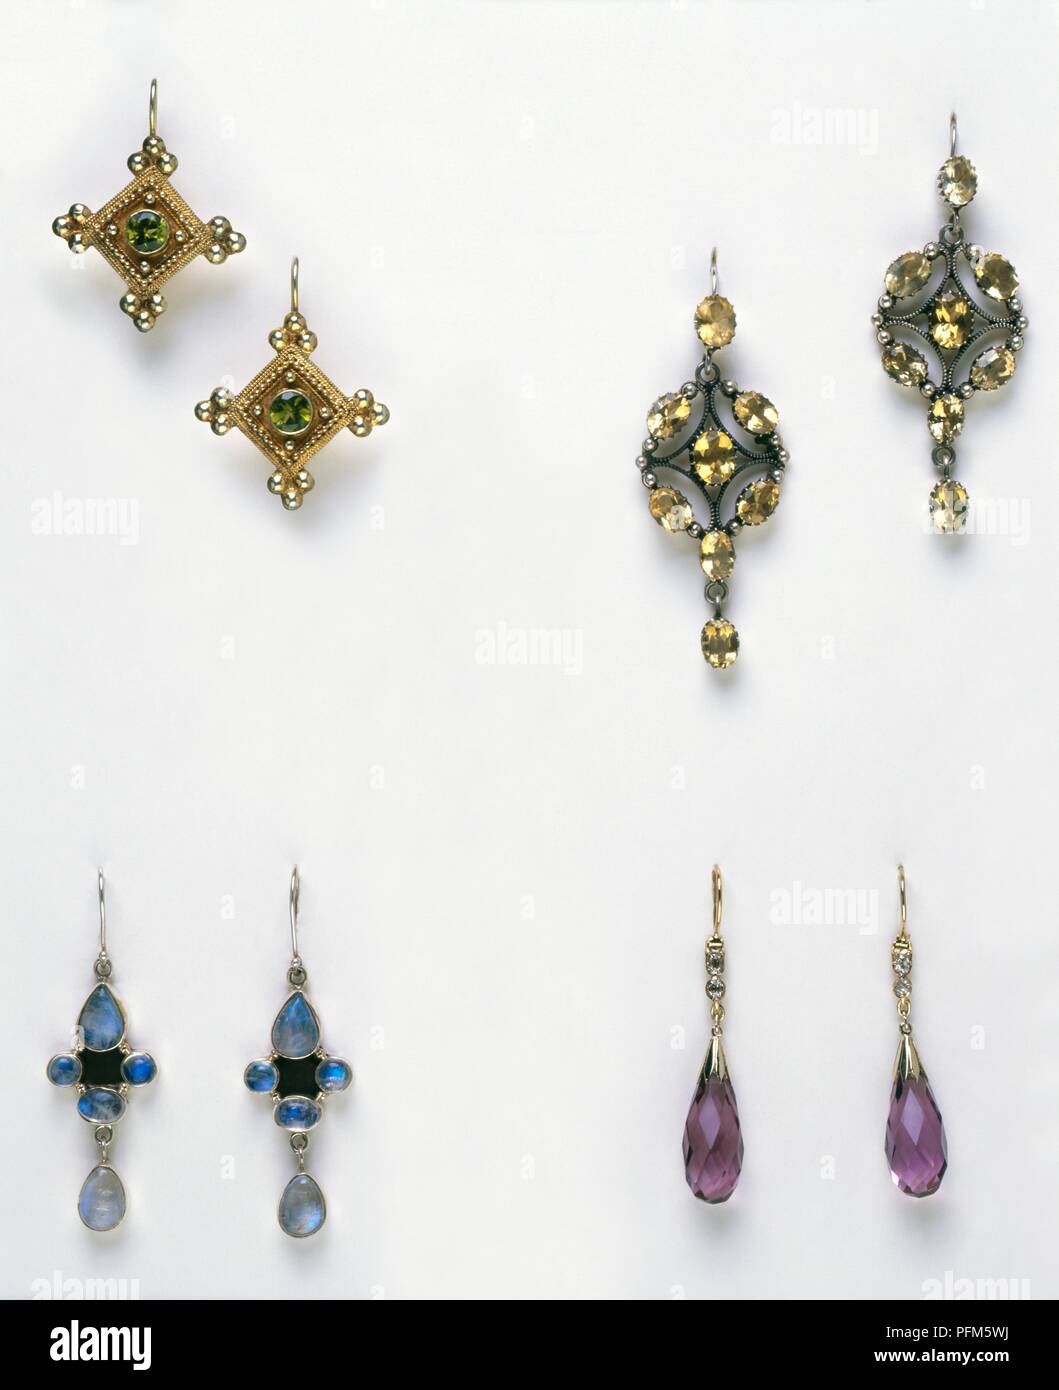 Pairs of zircon earrings, verdelite tourmaline earrings, pendeloque-cut amethyst earrings, and moonstone earrings Stock Photo